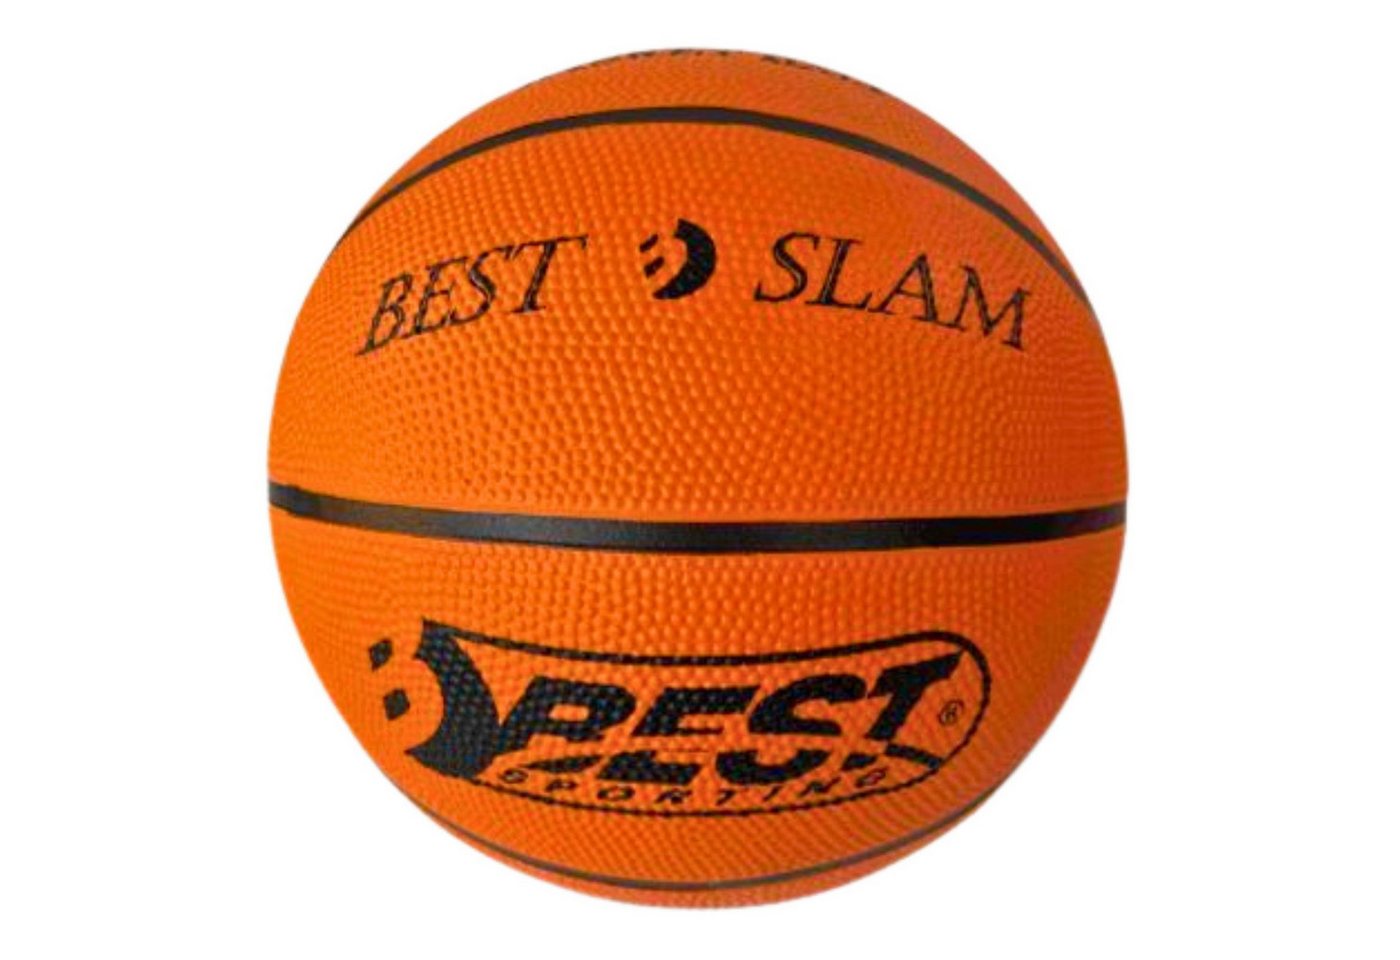 Best Sporting Basketball Basketball Größe 7 Brown/Cream mit offiziellem Gewicht & Größe, Basketball mit offiziellem Gewicht & Größe von Best Sporting